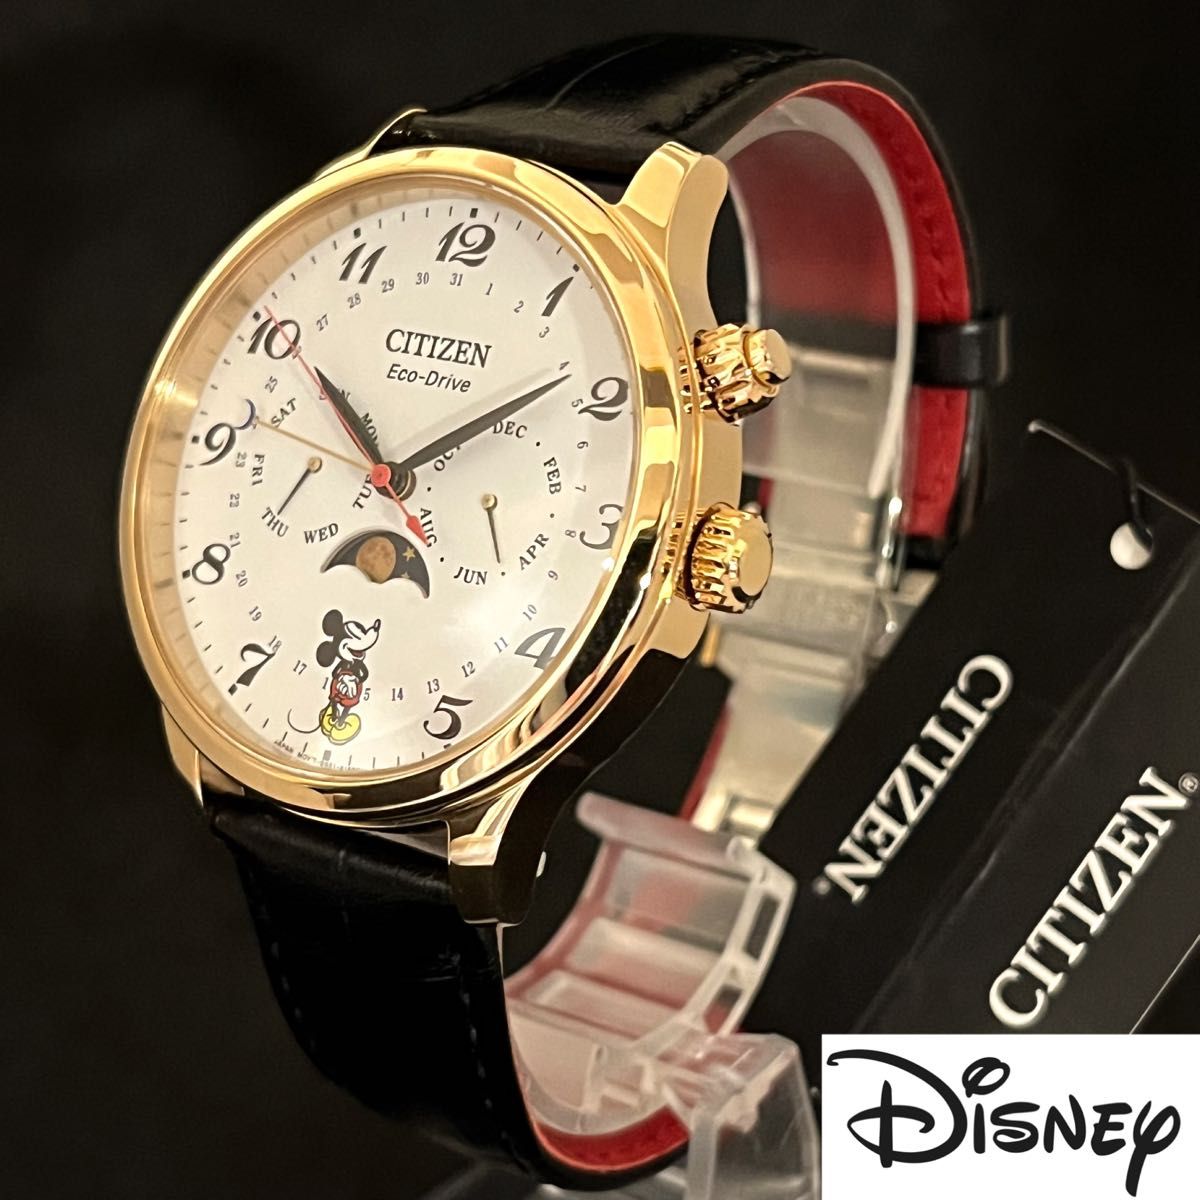 【Disney】展示品特価!/CITIZEN/シチズン/メンズ レディース腕時計/プレゼントに/ディズニー/ミッキーマウス/激レア